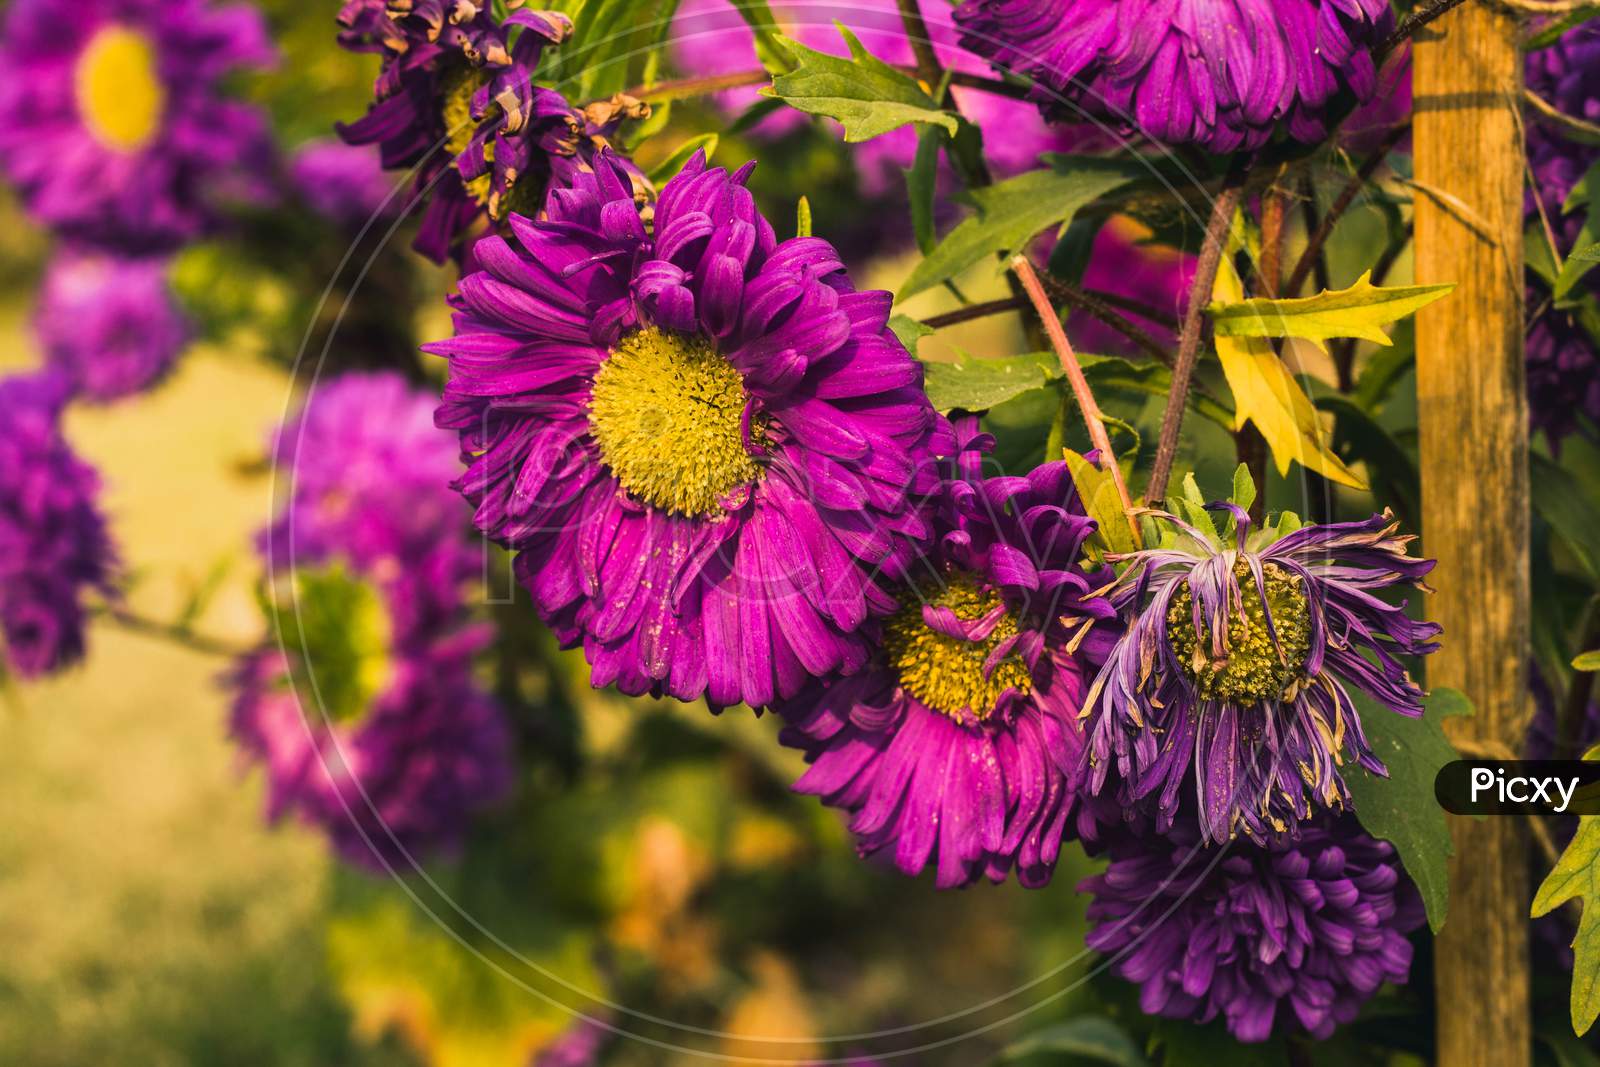 A violet flower in a garden